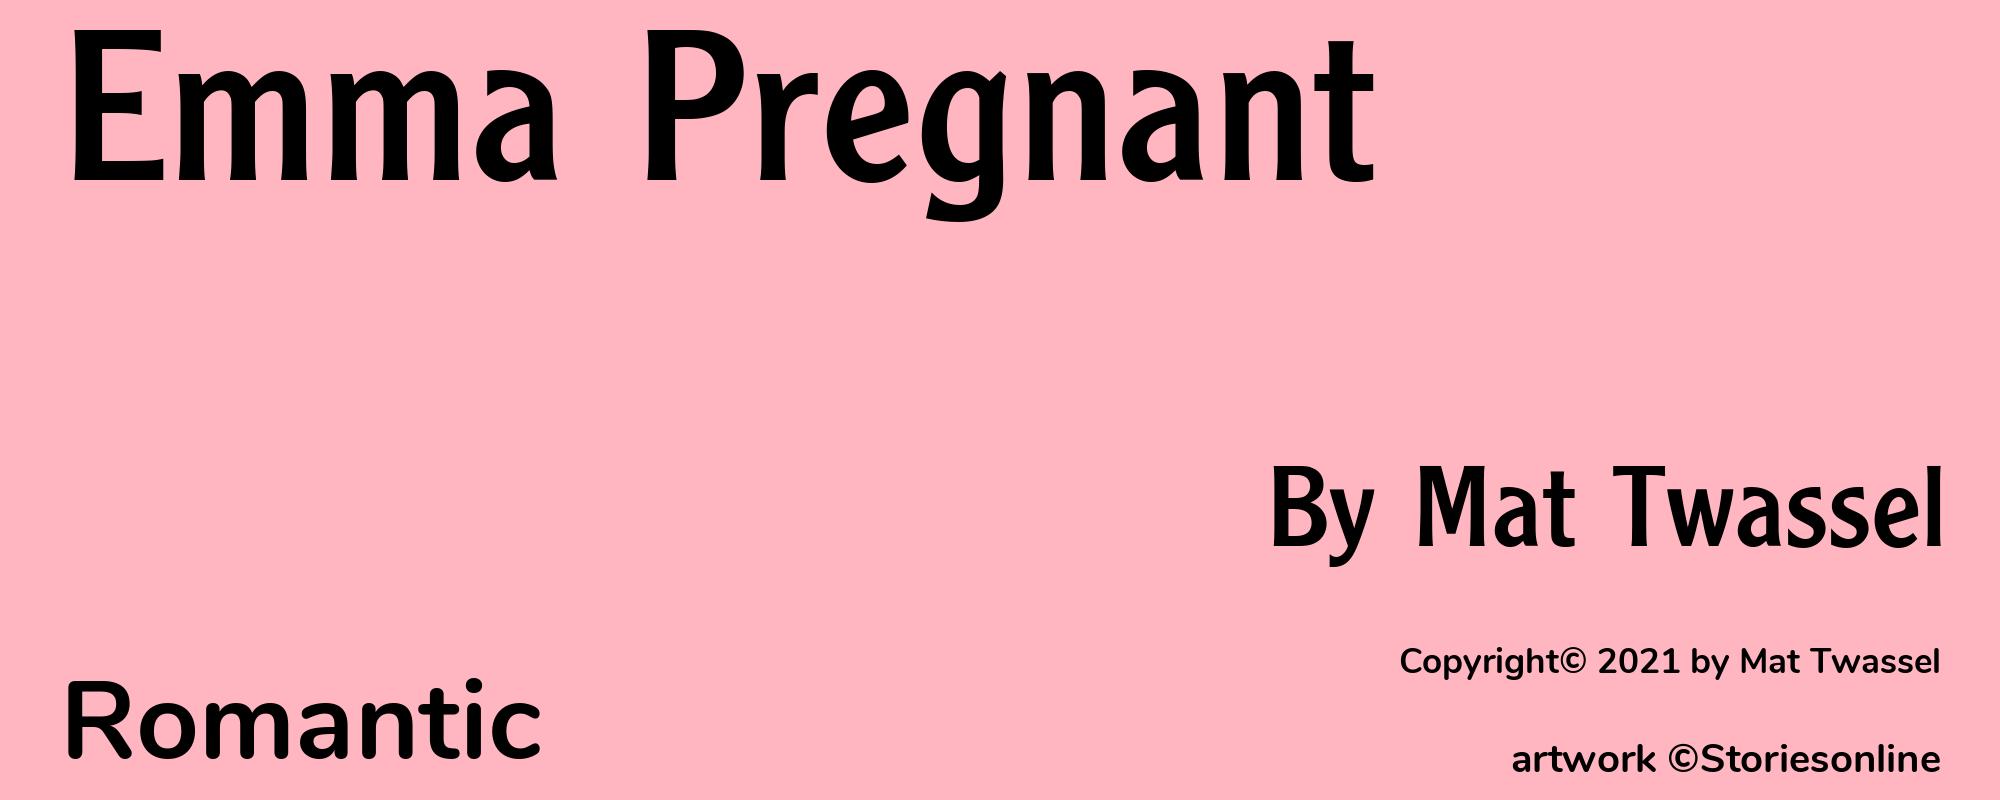 Emma Pregnant - Cover